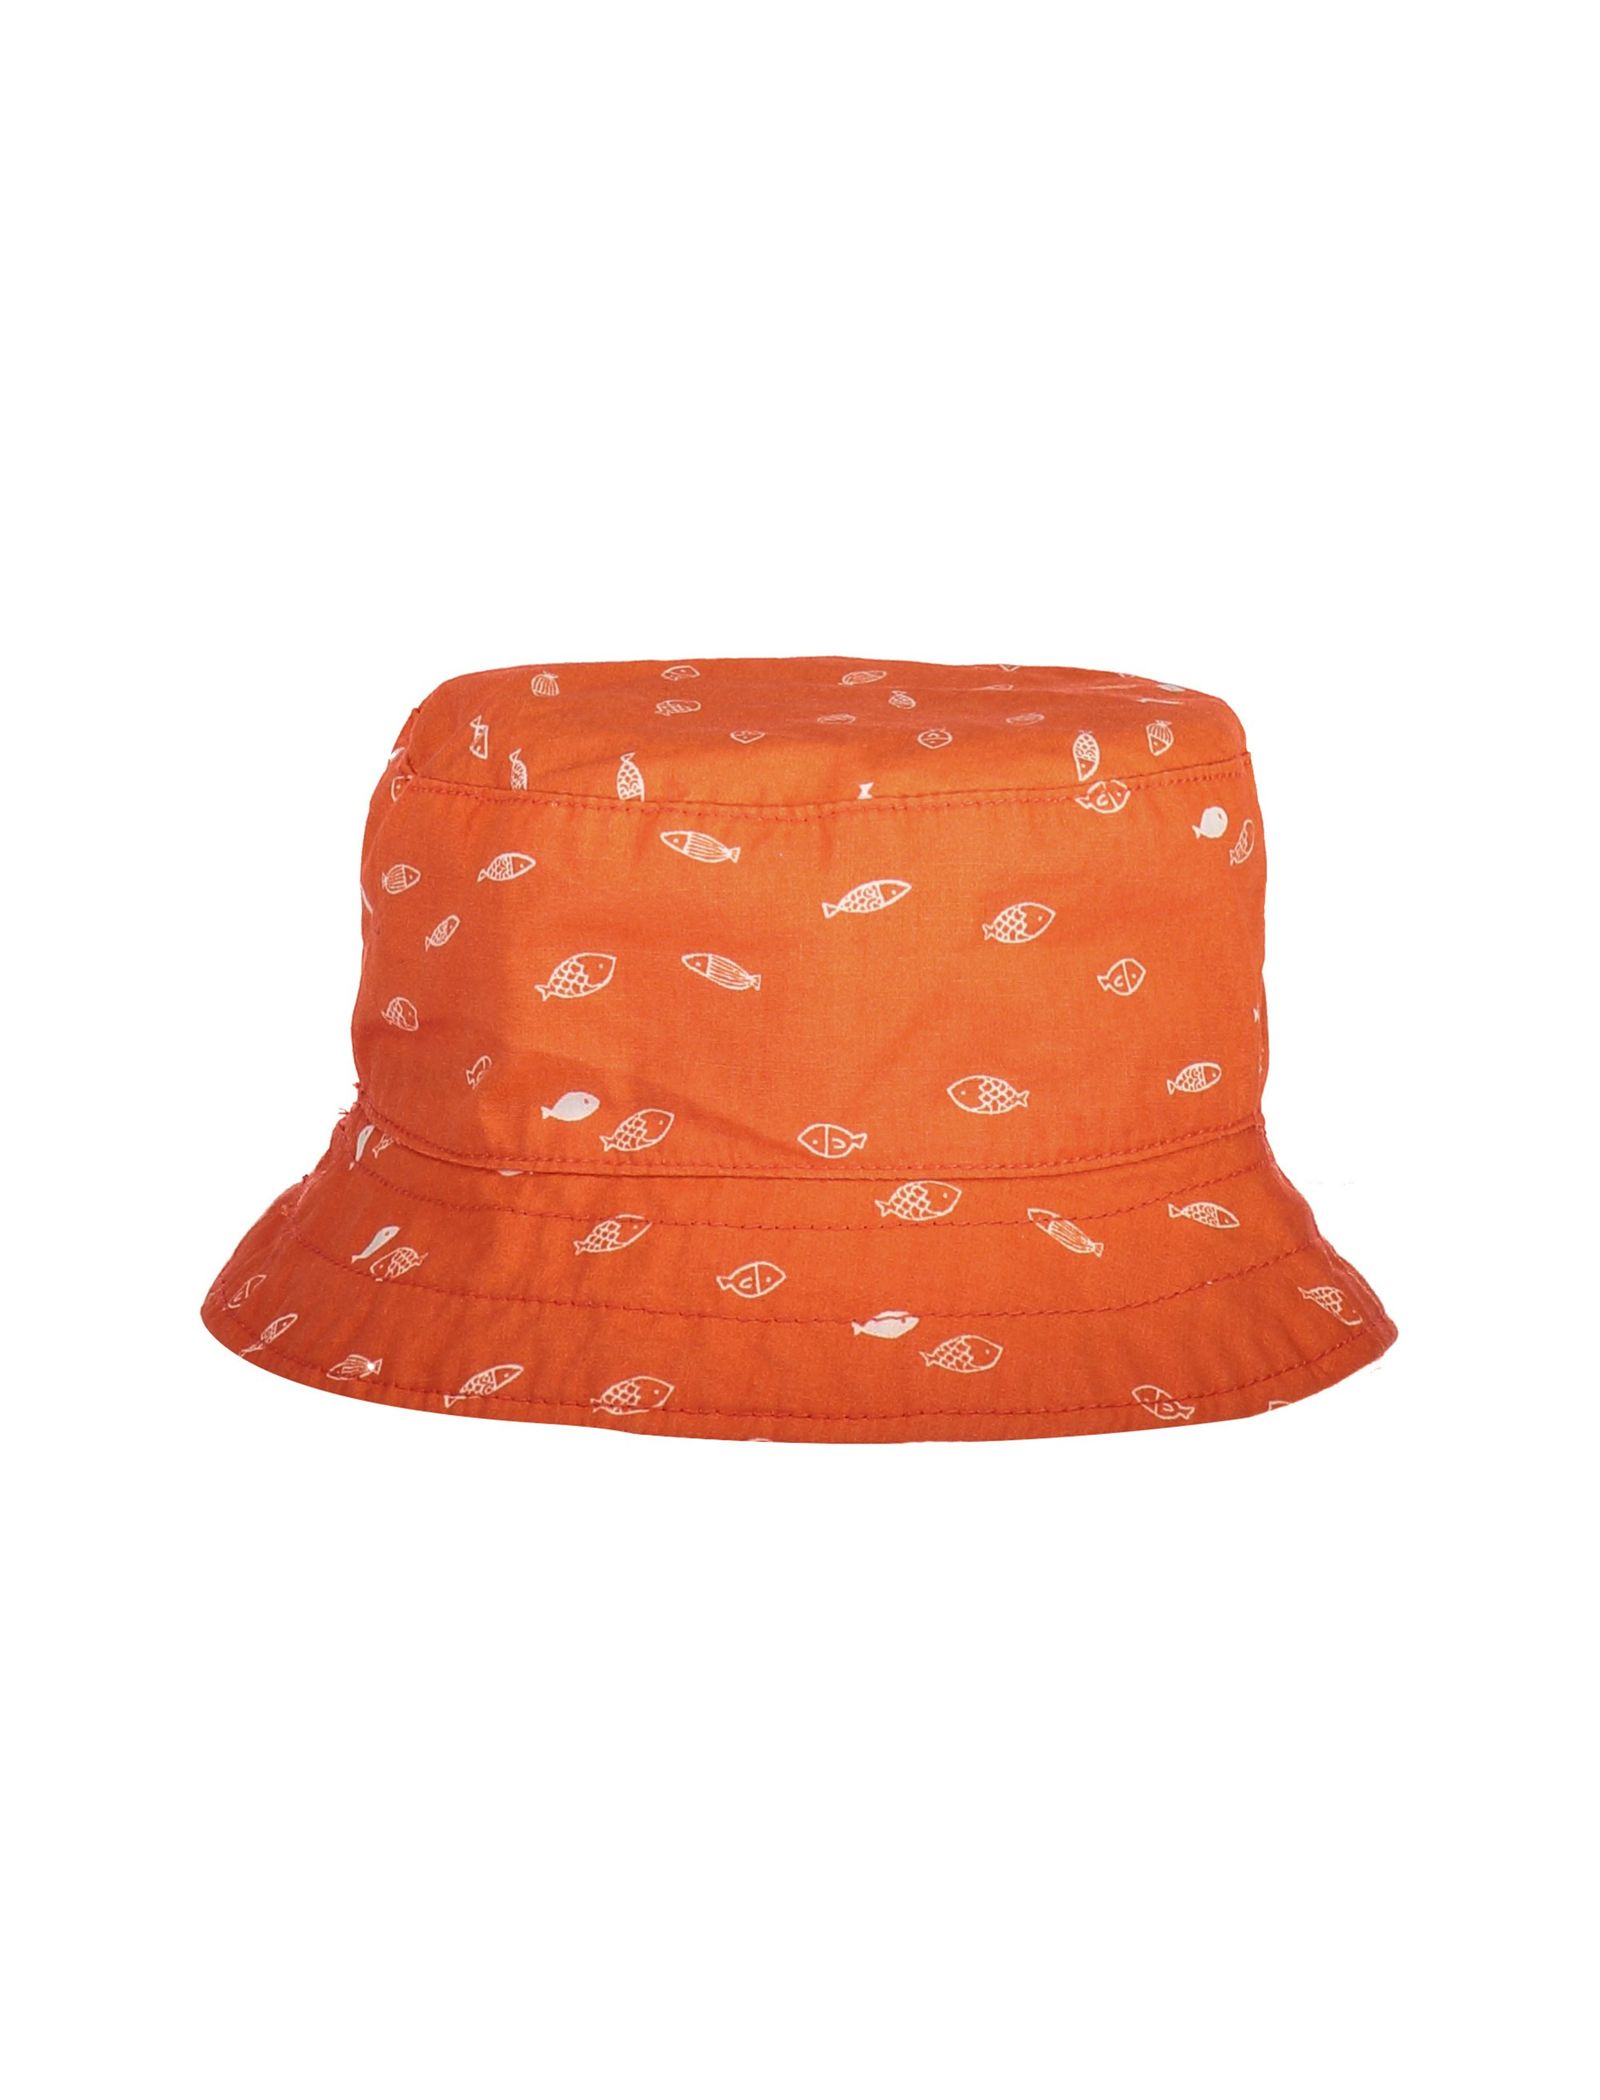 کلاه پارچه ای طرح دار نوزادی دخترانه - ارکسترا - نارنجي - 4